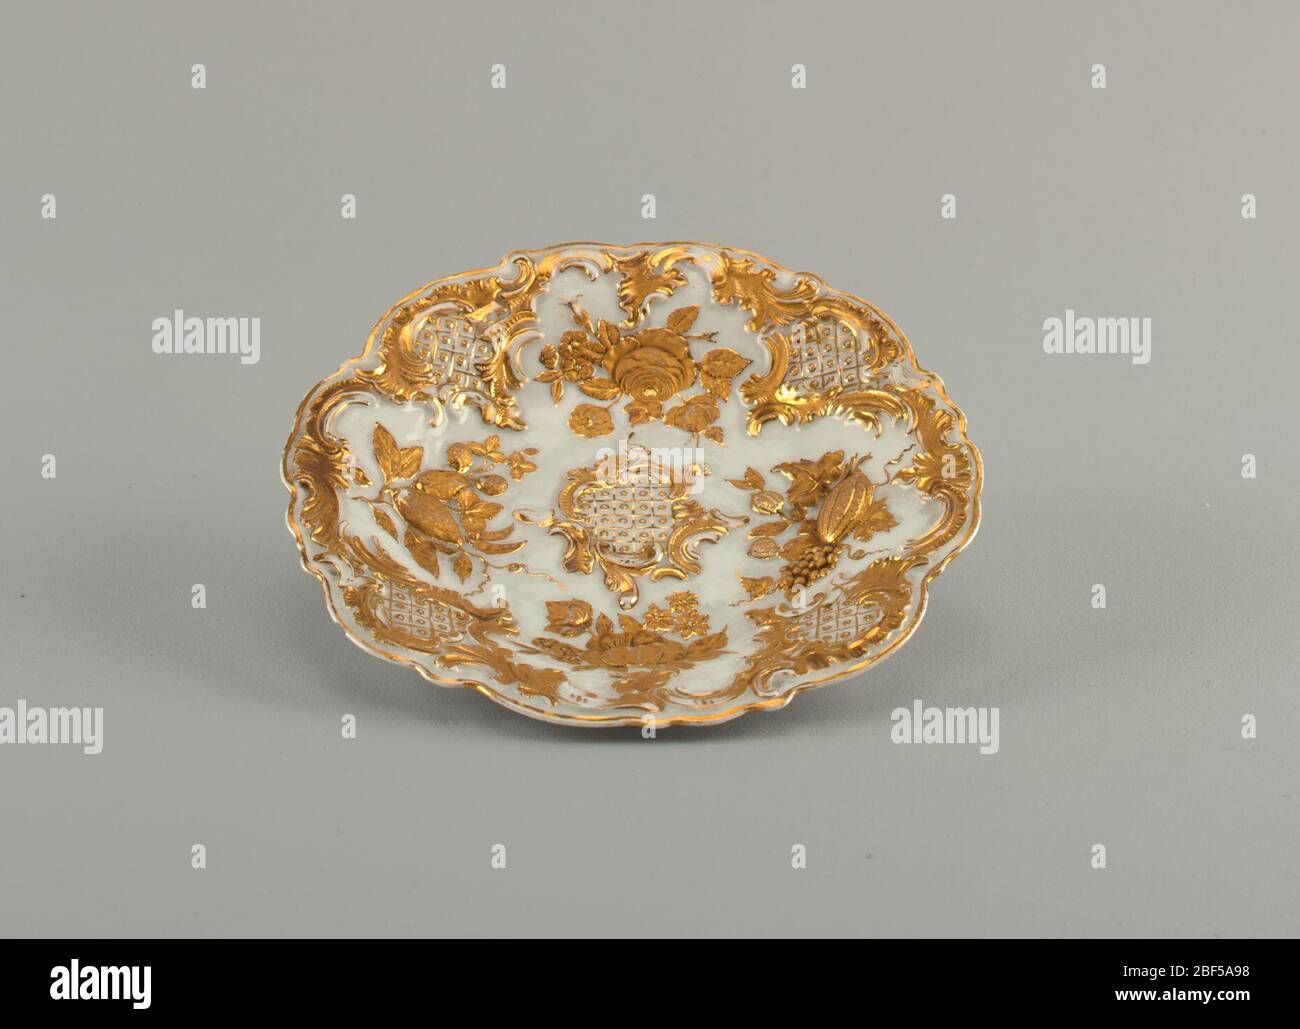 Piatto da dessert. Piatto ovale con bordi smerlati, parzialmente dorato con ornamento floreale in rilievo. Foto Stock